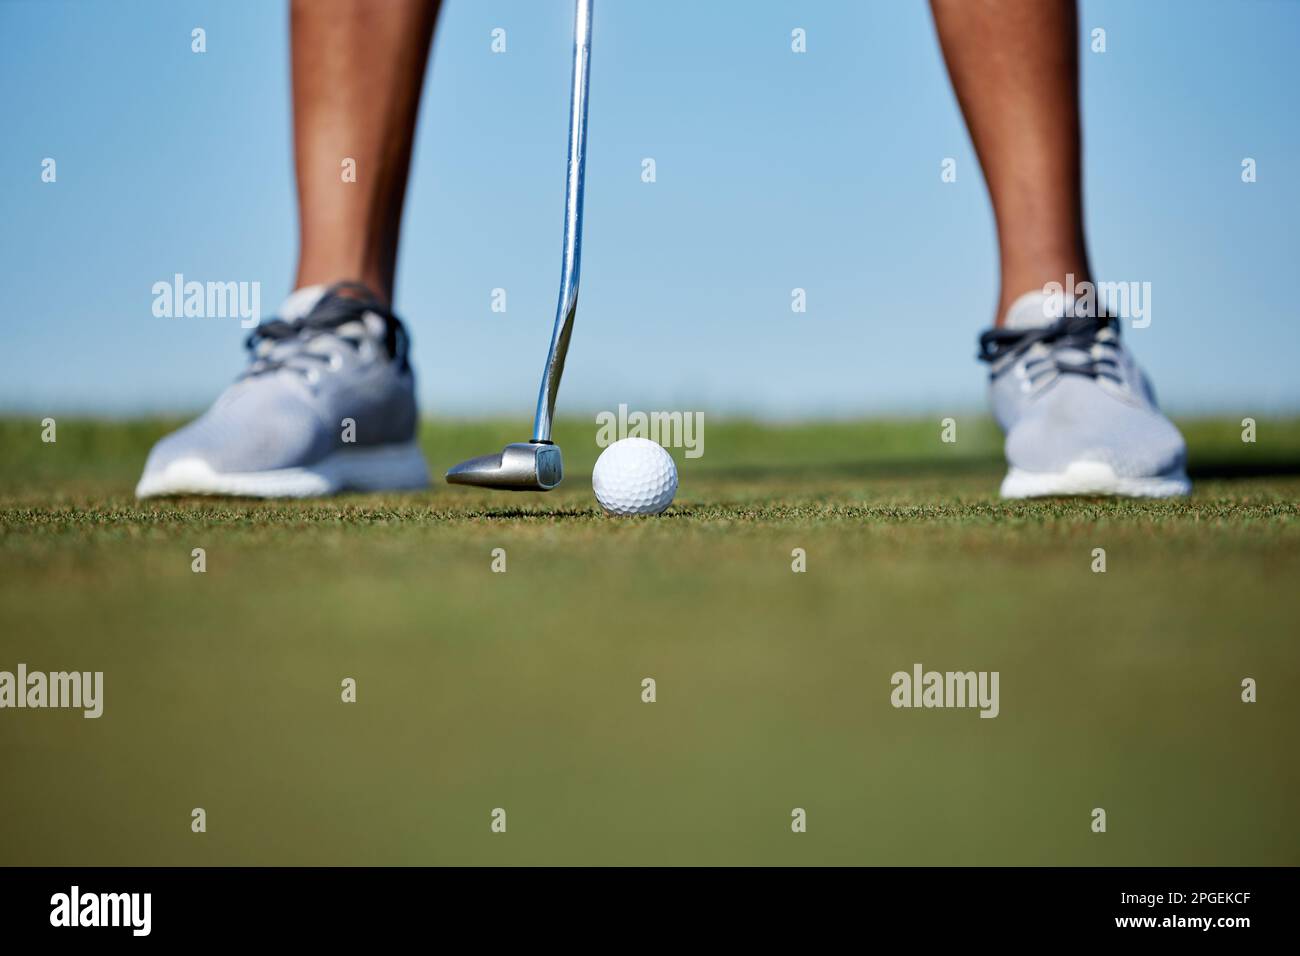 Makroaufnahme einer unbekannten Person, die Golf spielt und sich darauf konzentriert, dass der Golfschläger den Ball auf dem Gras schlägt Stockfoto